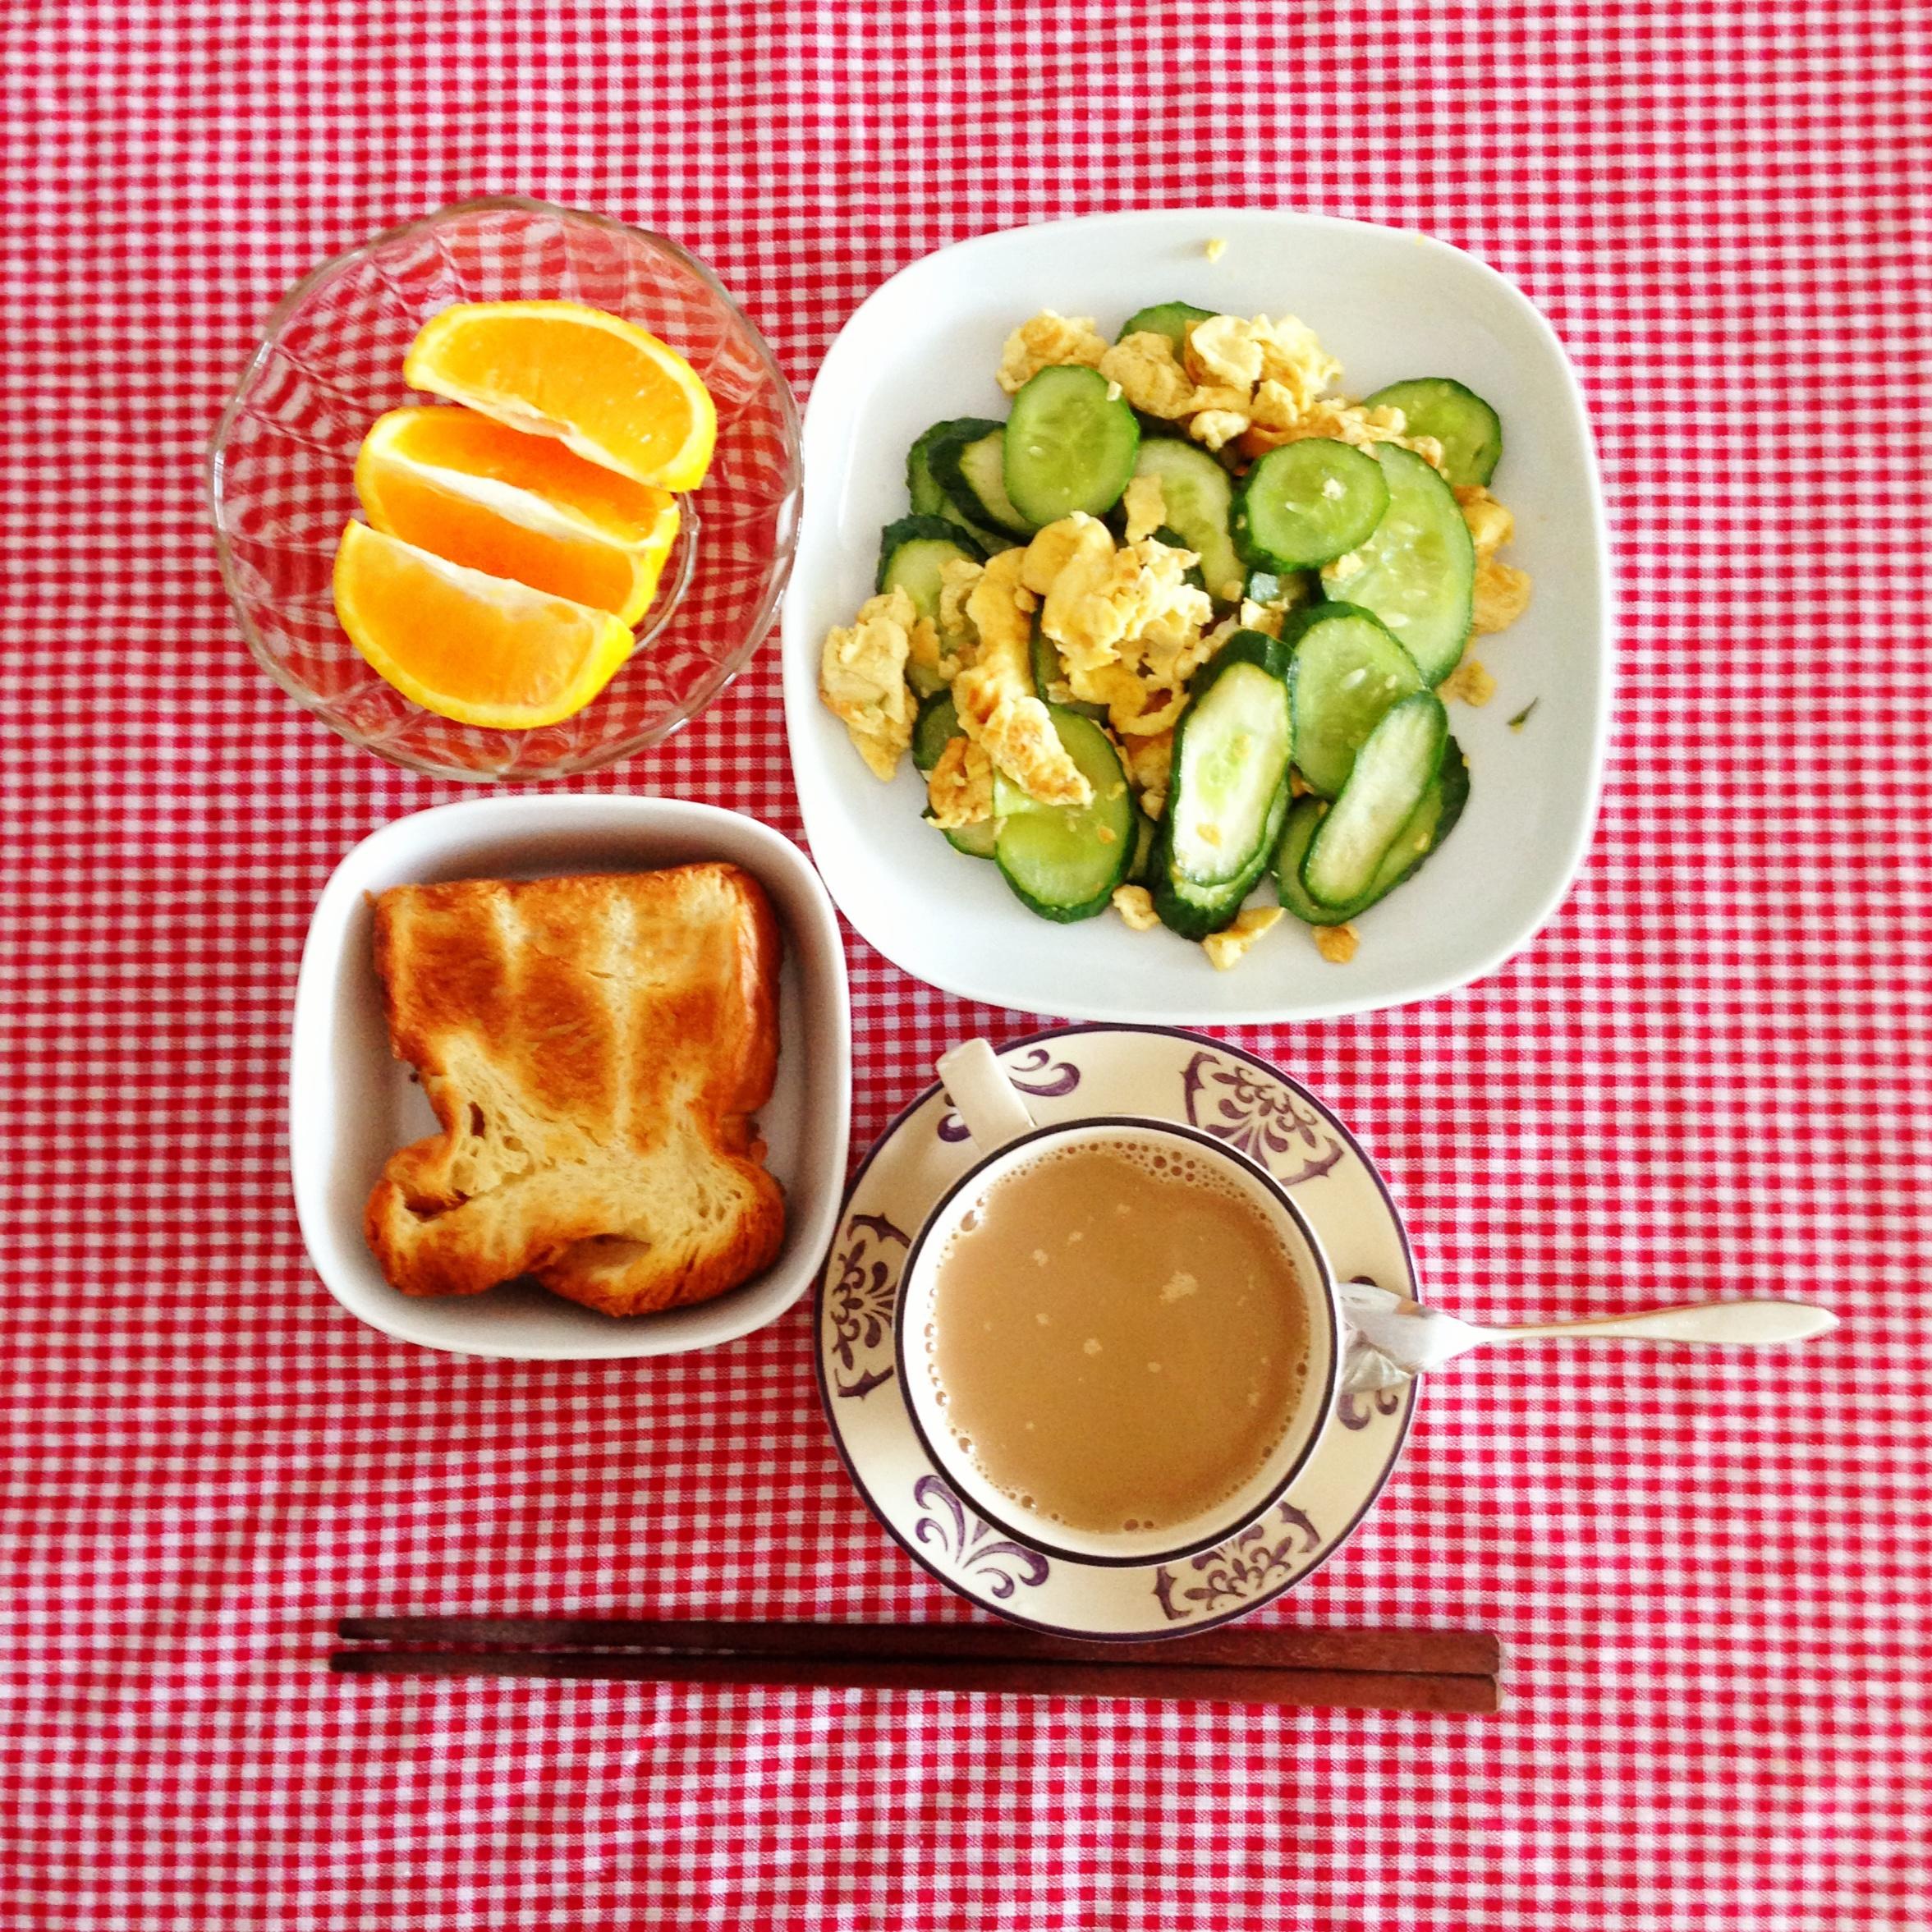 十分钟早餐 breakfast at Shirky’s